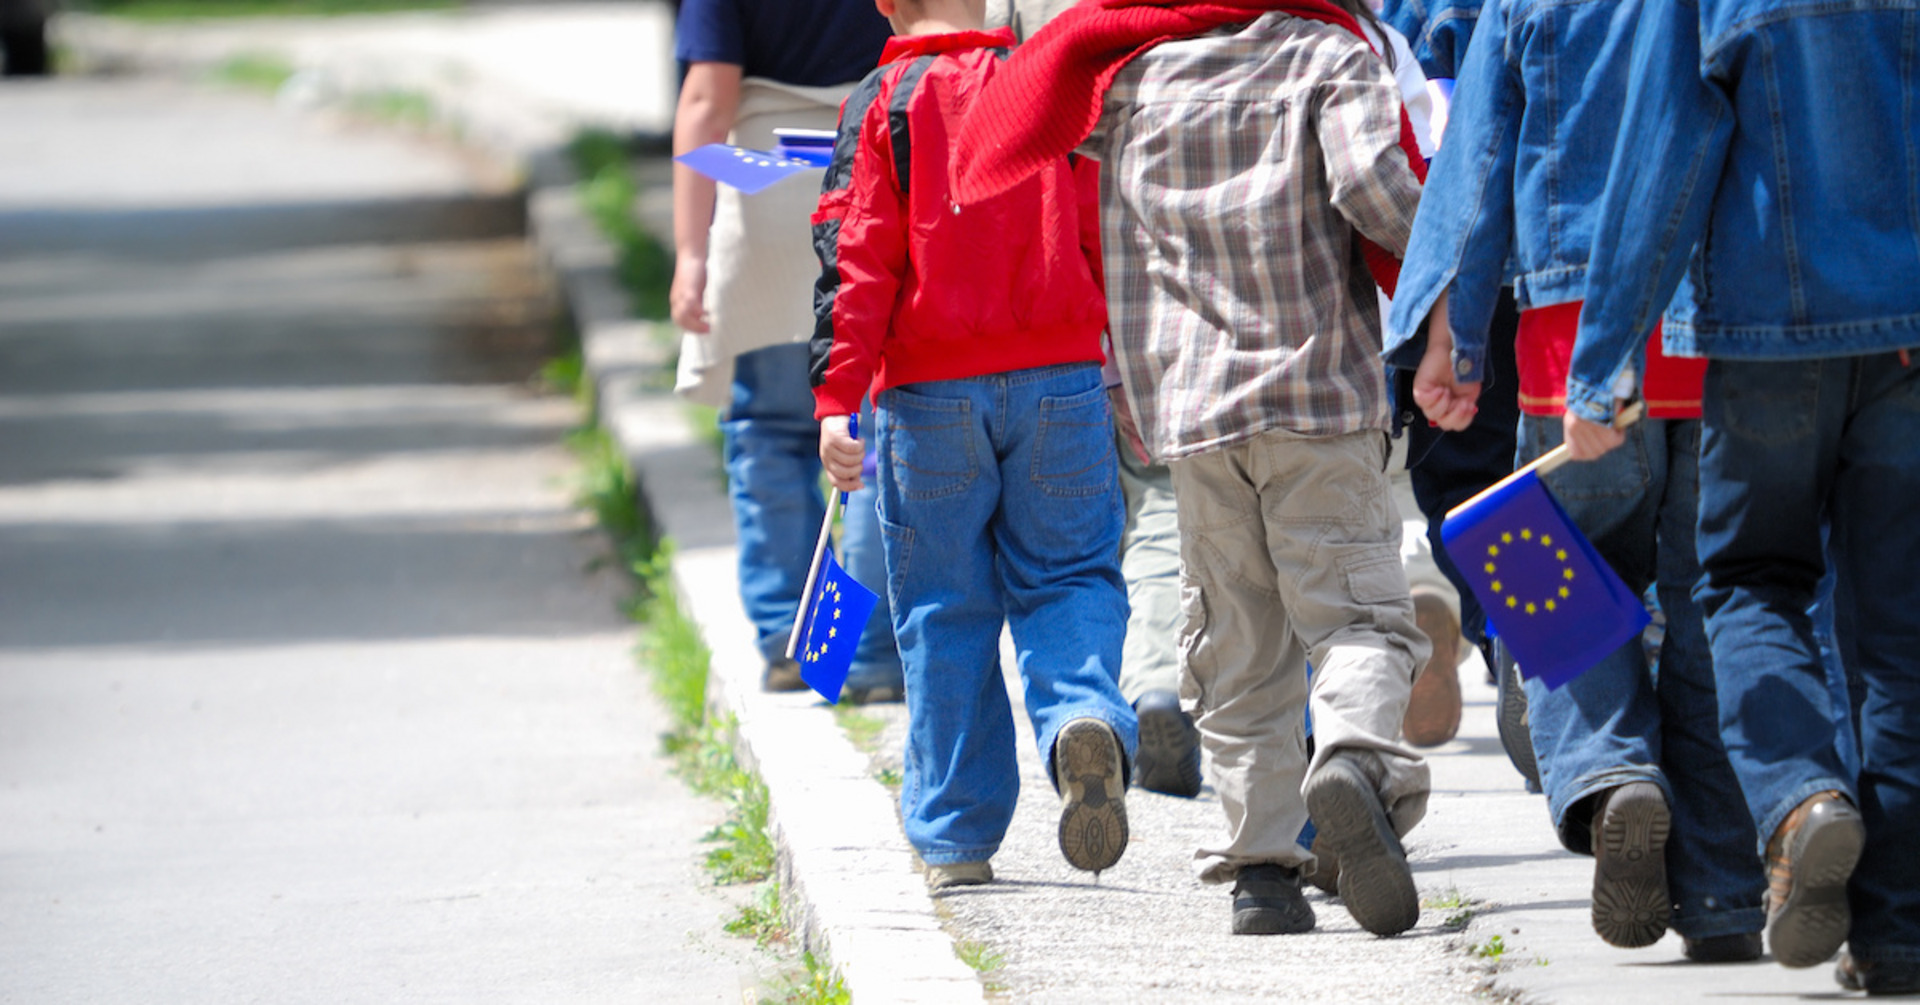 Kinder mit EU-Flaggen gehen auf dem Bürgersteig